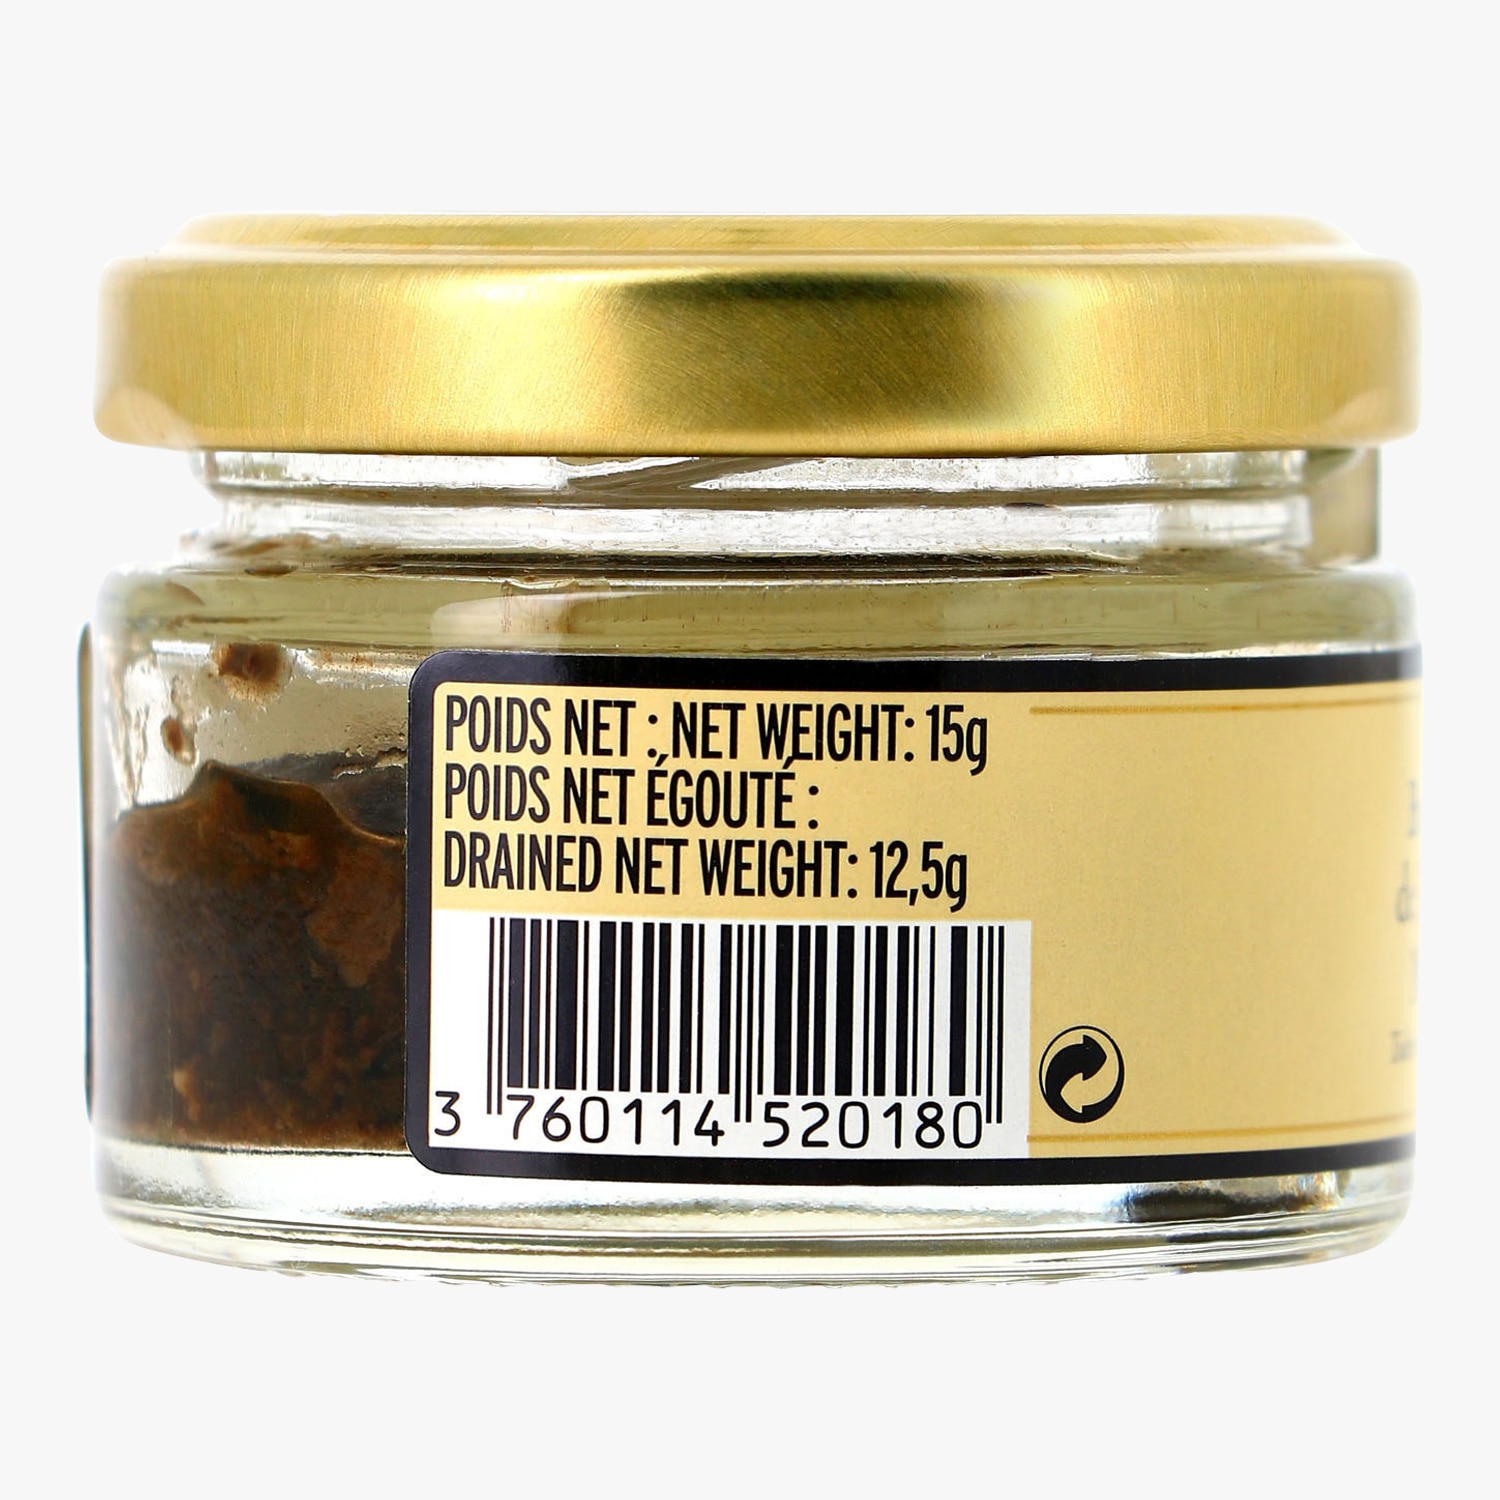 Brisures de truffes noires, tuber melanosporum - Maison de la Truffe